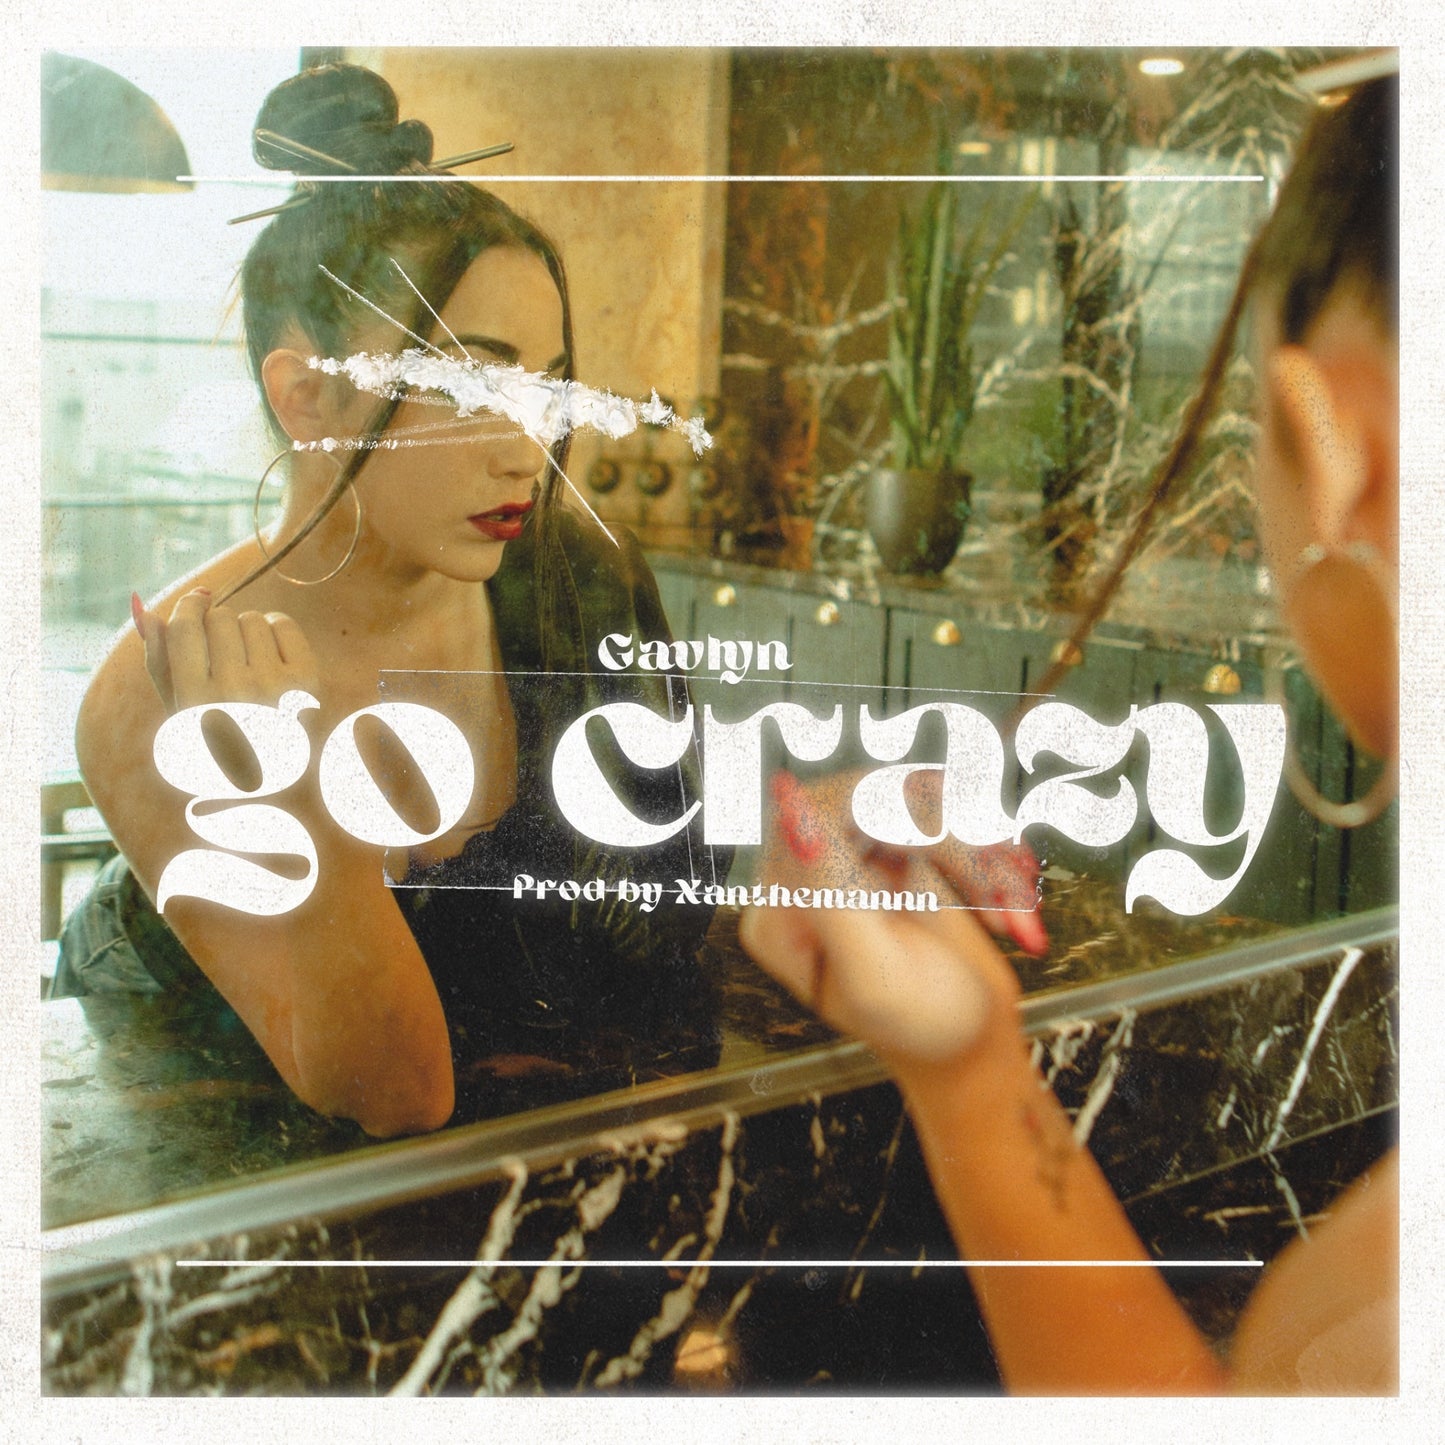 Go Crazy (Single)